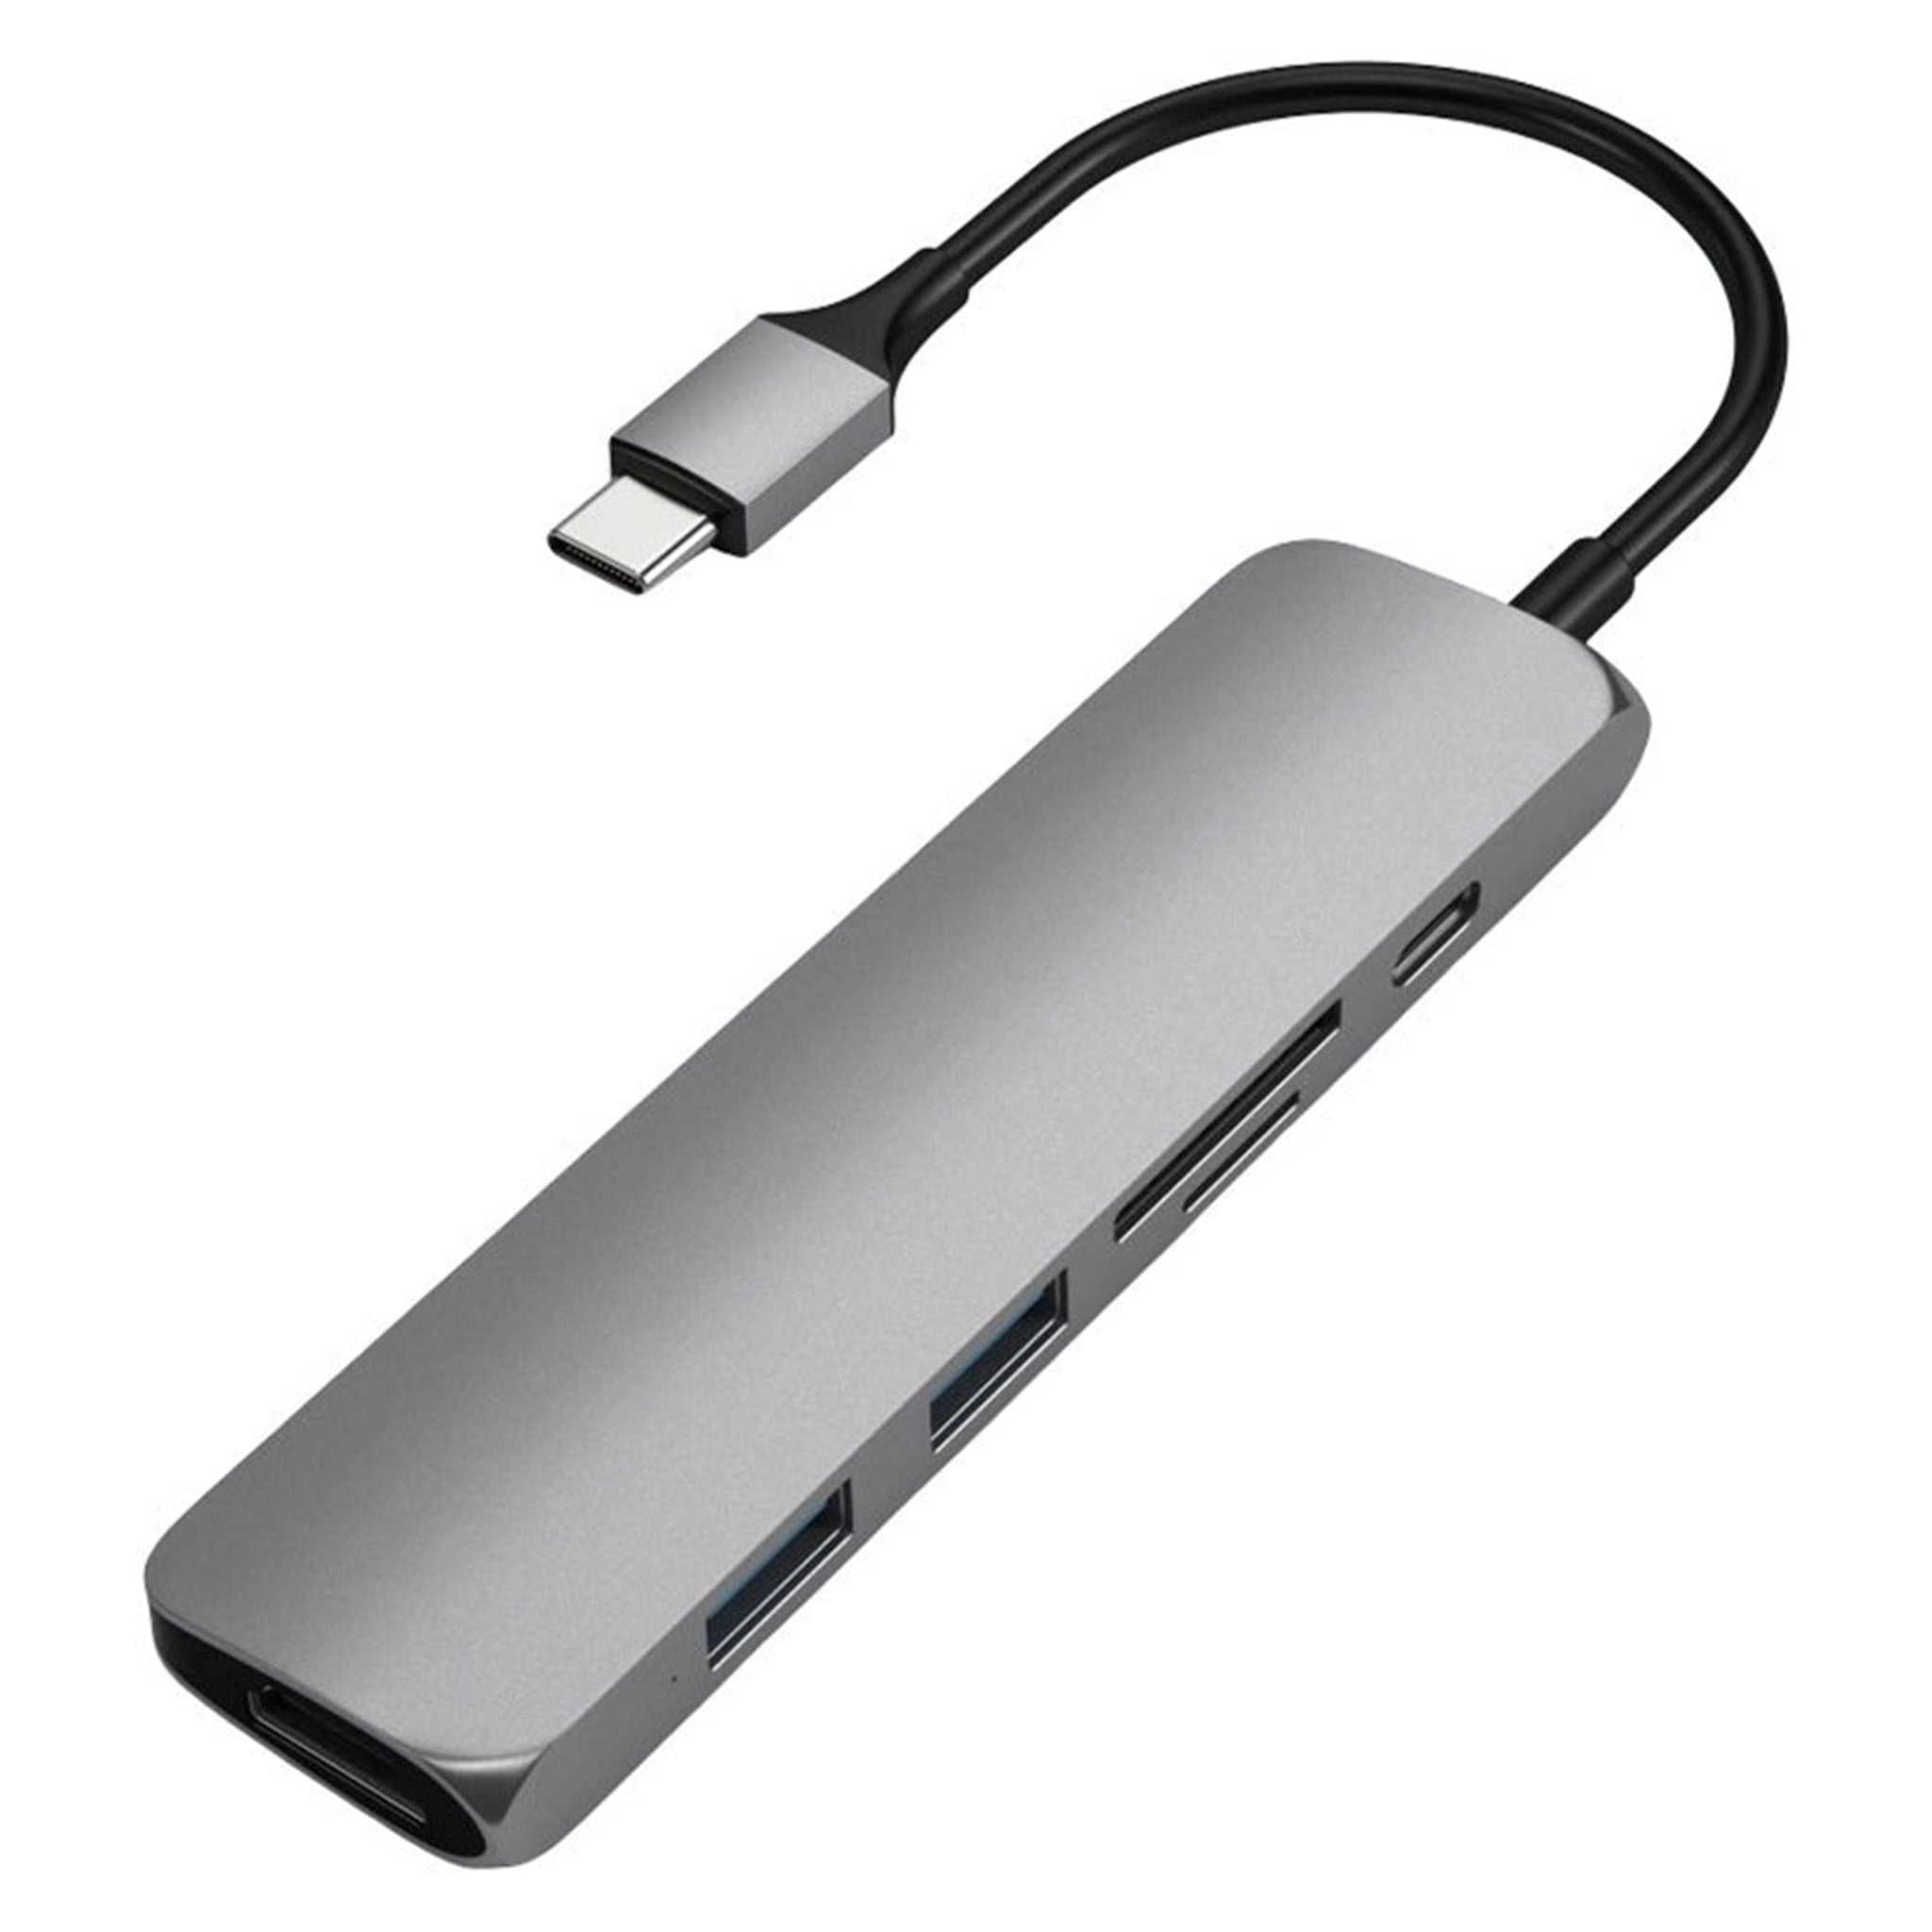 Billede af Satechi Slim USB-C MultiPort Adapter V2 m. HDMI, USB 3.0, Space Grey hos Balar